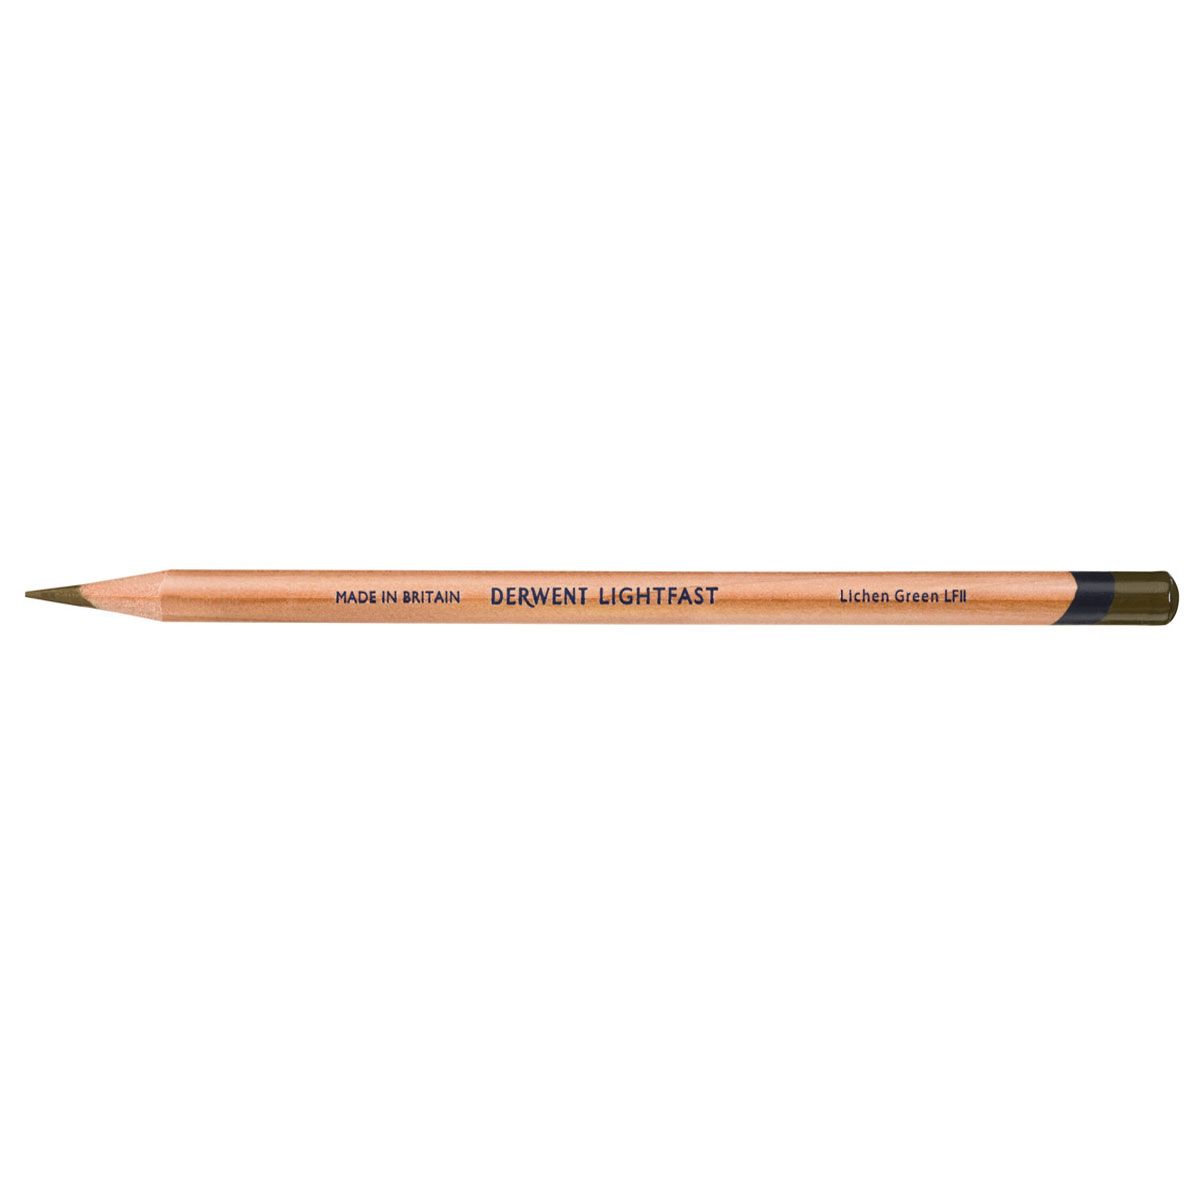 NEW Derwent Lightfast Pencil Colour: Lichen Green